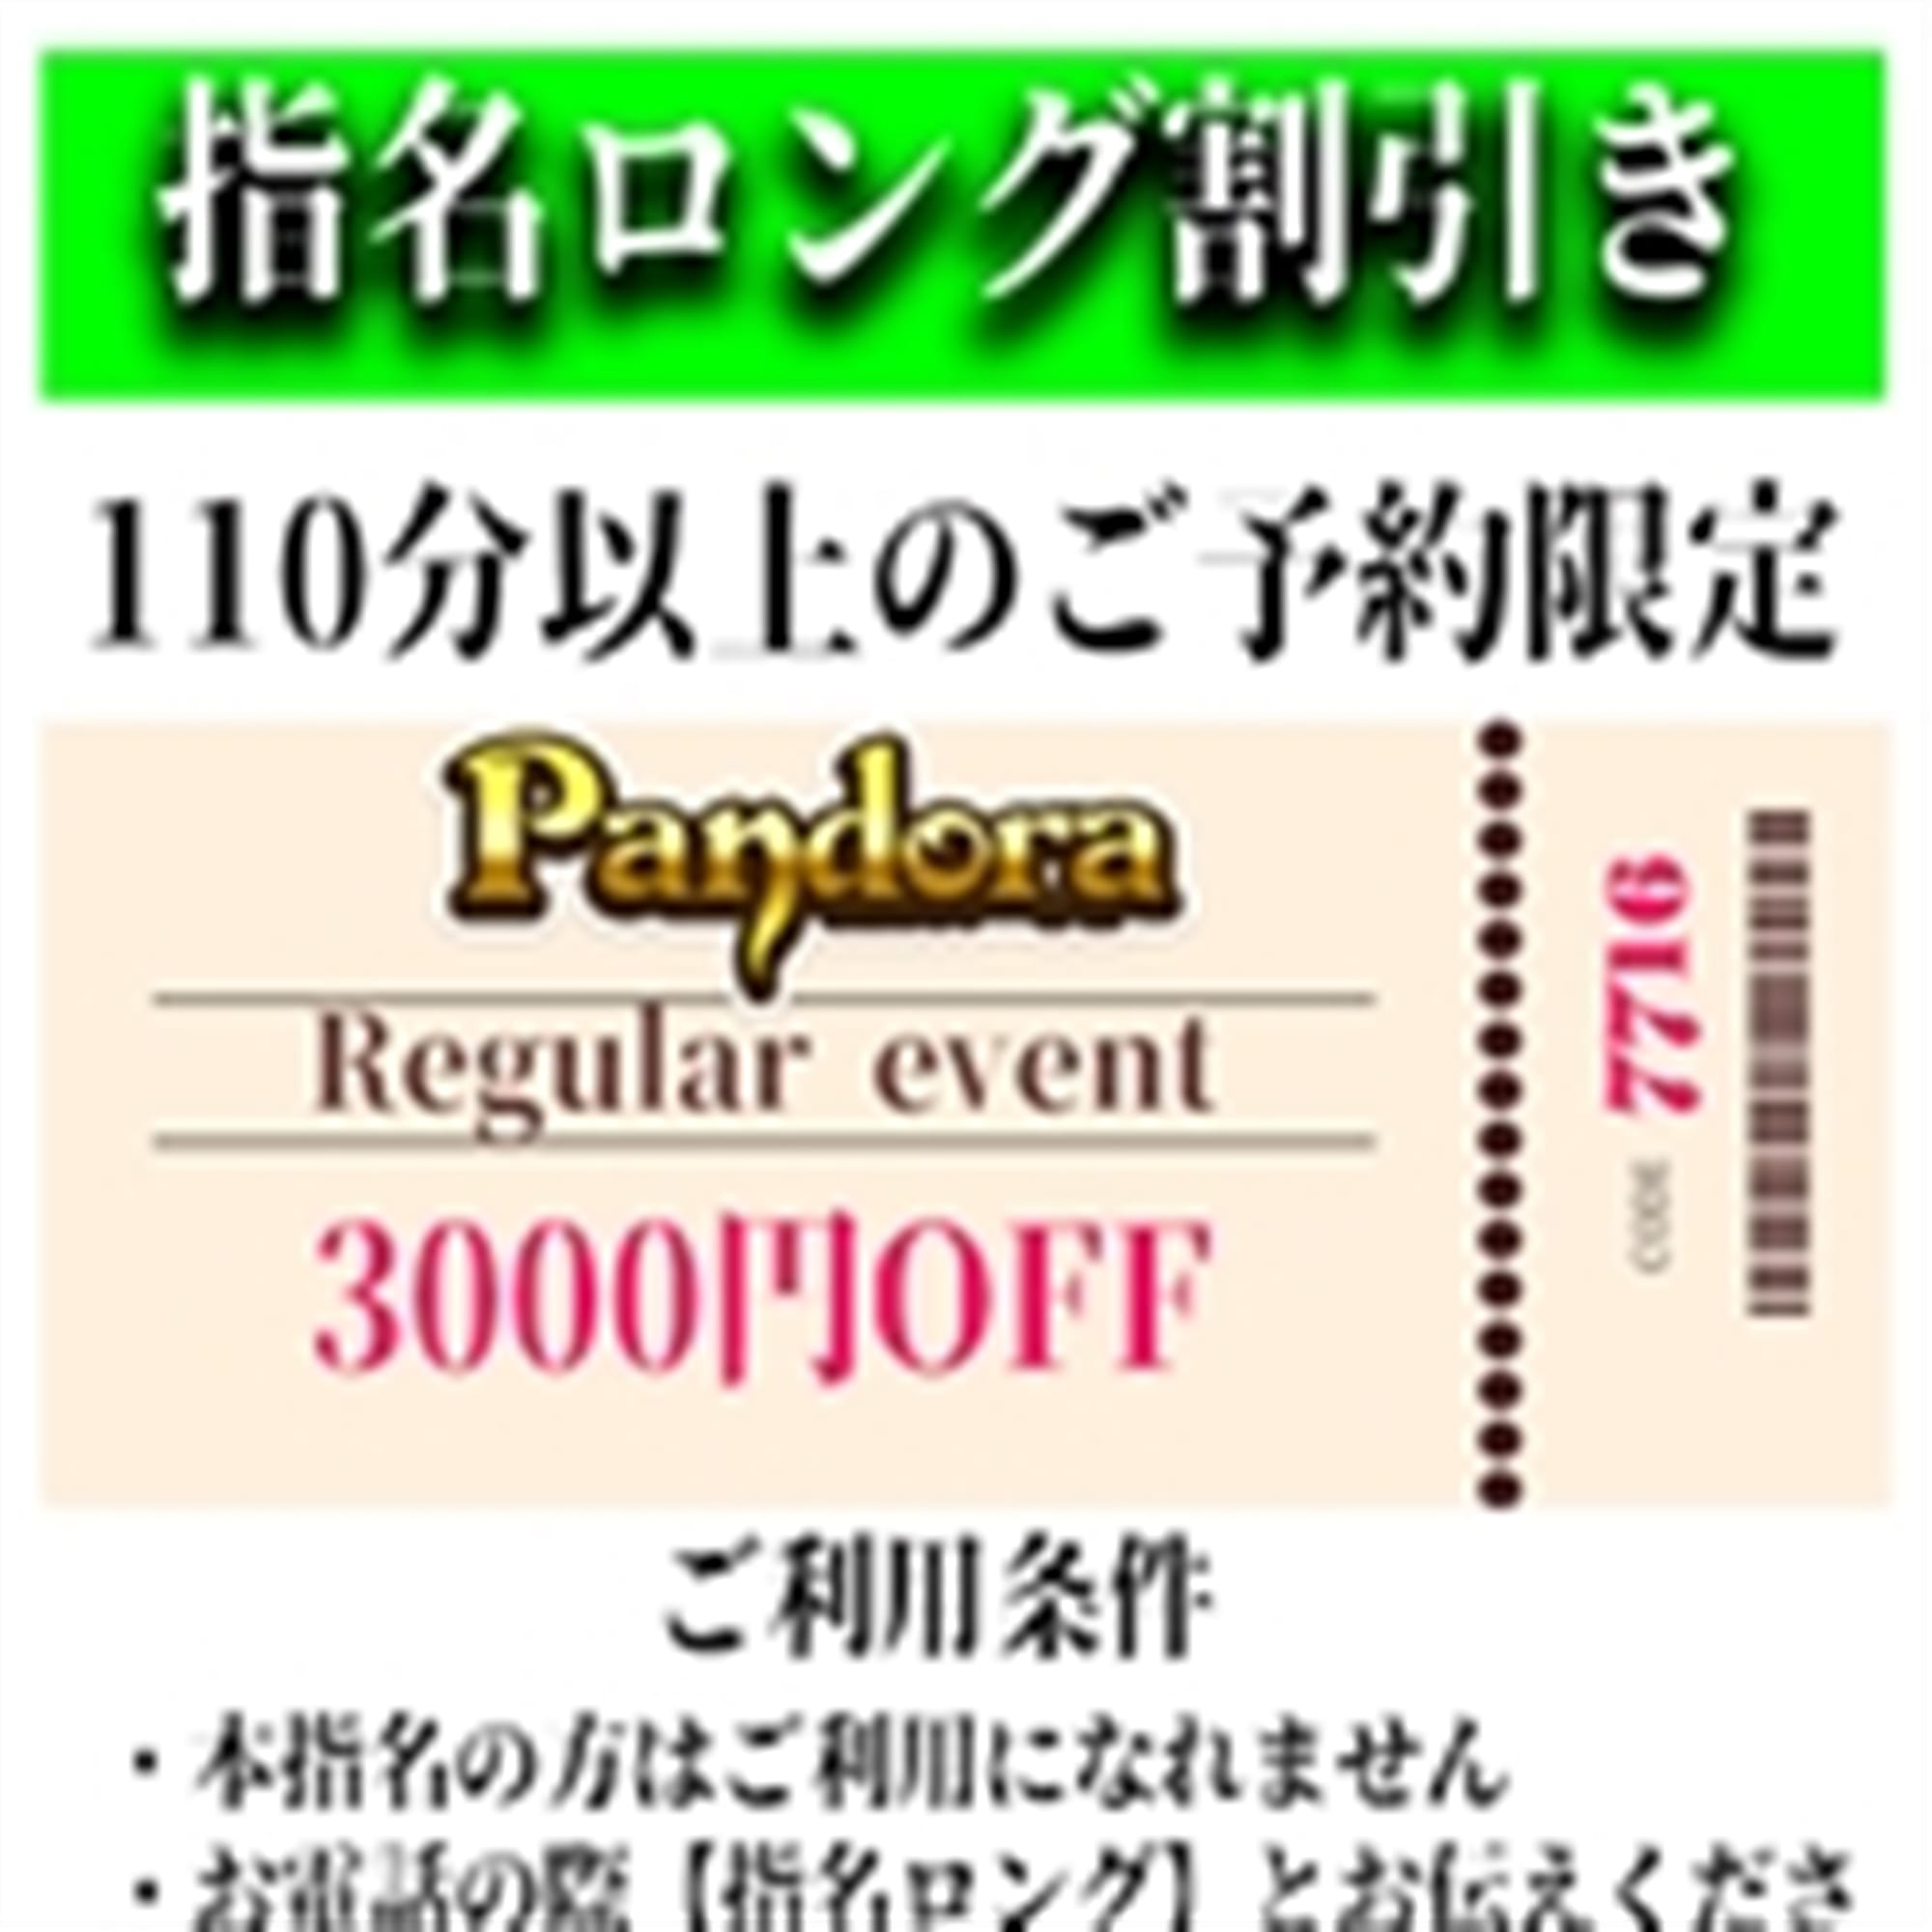 「ご指名のお客様も遊べるロングコース割引」04/25(木) 14:10 | Pandora(パンドラ)新潟のお得なニュース